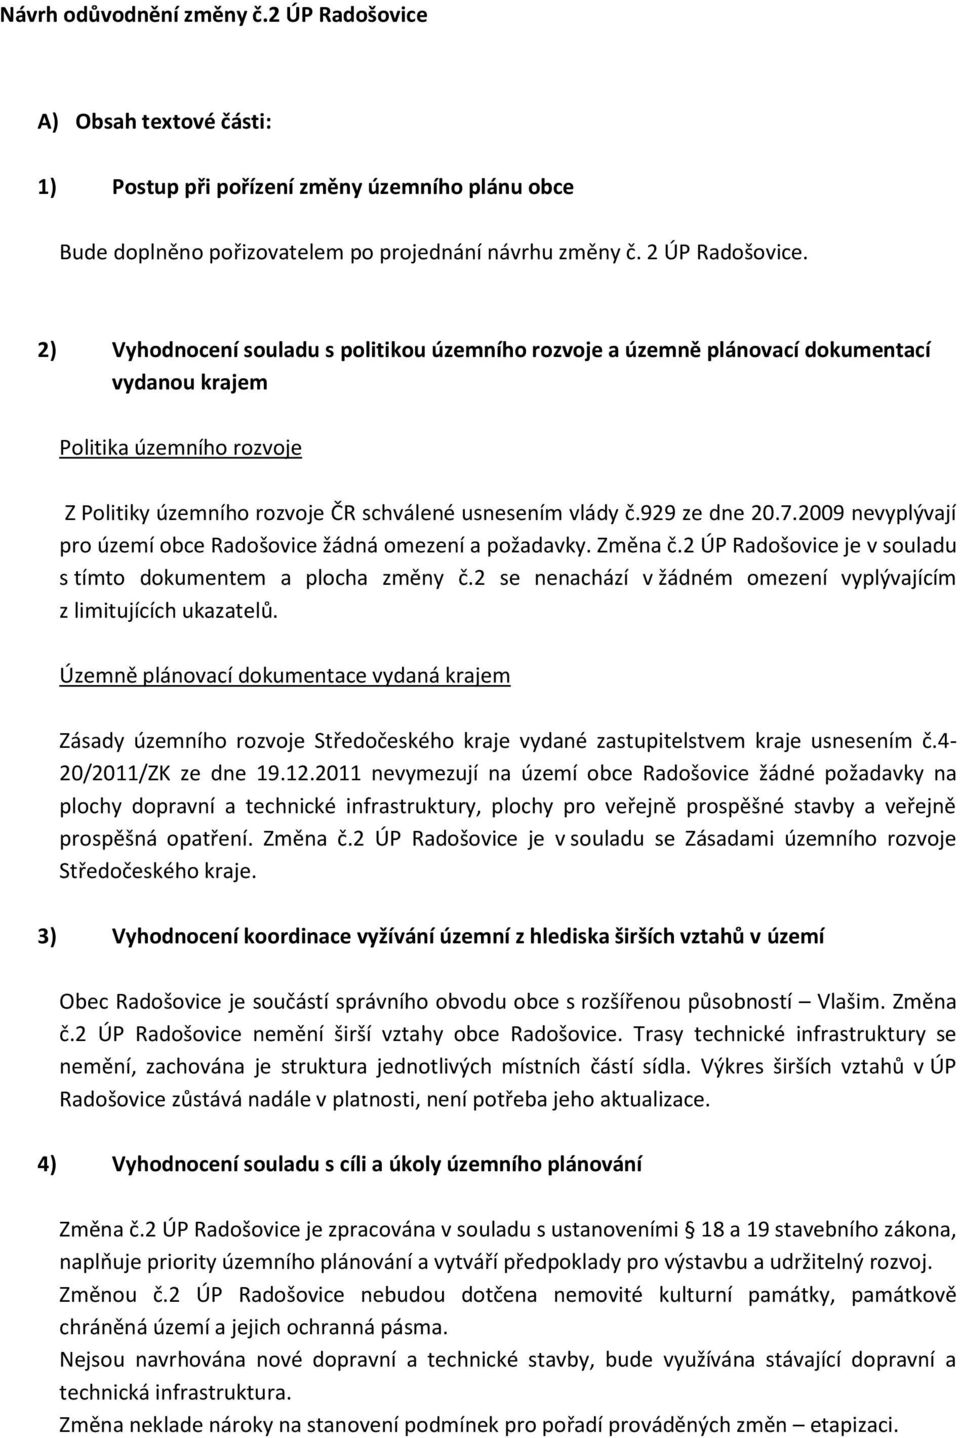 2009 nevyplývají pro území obce Radošovice žádná omezení a požadavky. Změna č.2 ÚP Radošovice je v souladu s tímto dokumentem a plocha změny č.